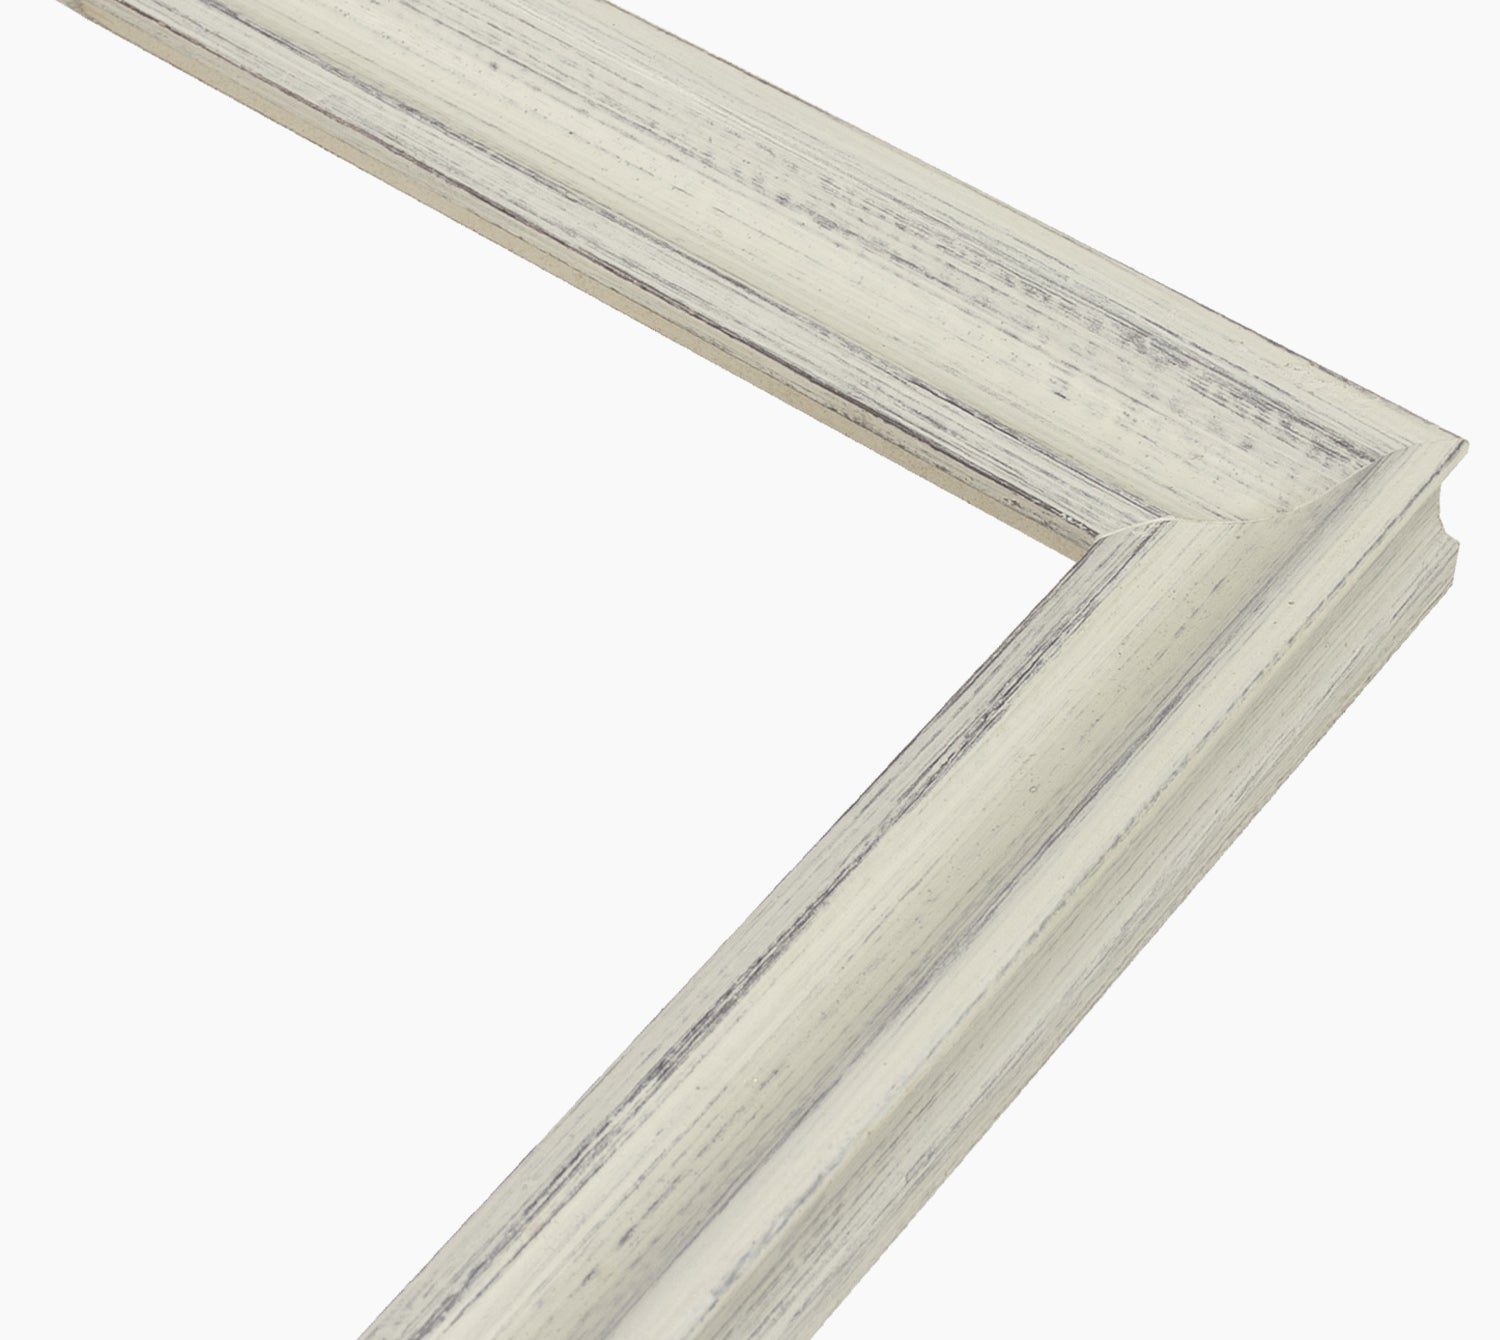 Aste per cornici in legno bianco fondo marrone con profilo misura 35x30 mm  Art. 145.920 – Lombarda cornici s.n.c.